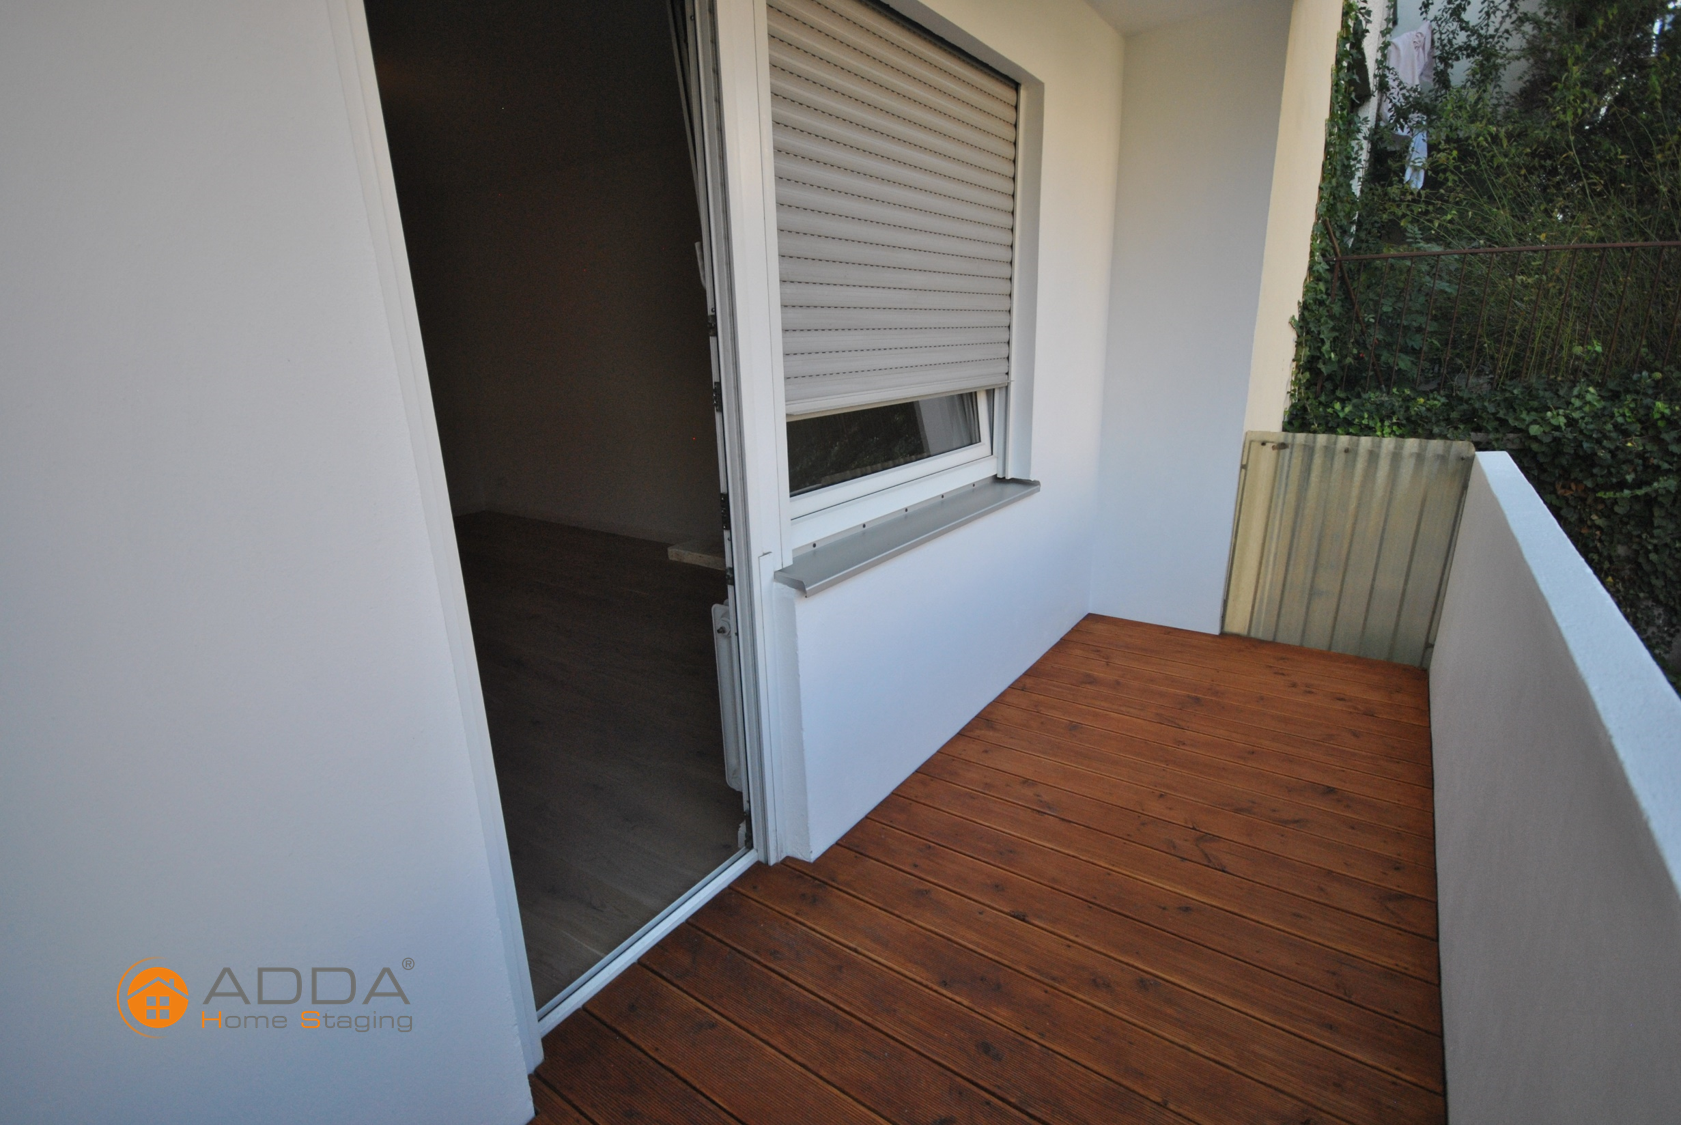 Balkon vor ADDA Homestaging #raumgestaltung ©ADDA Homestaging